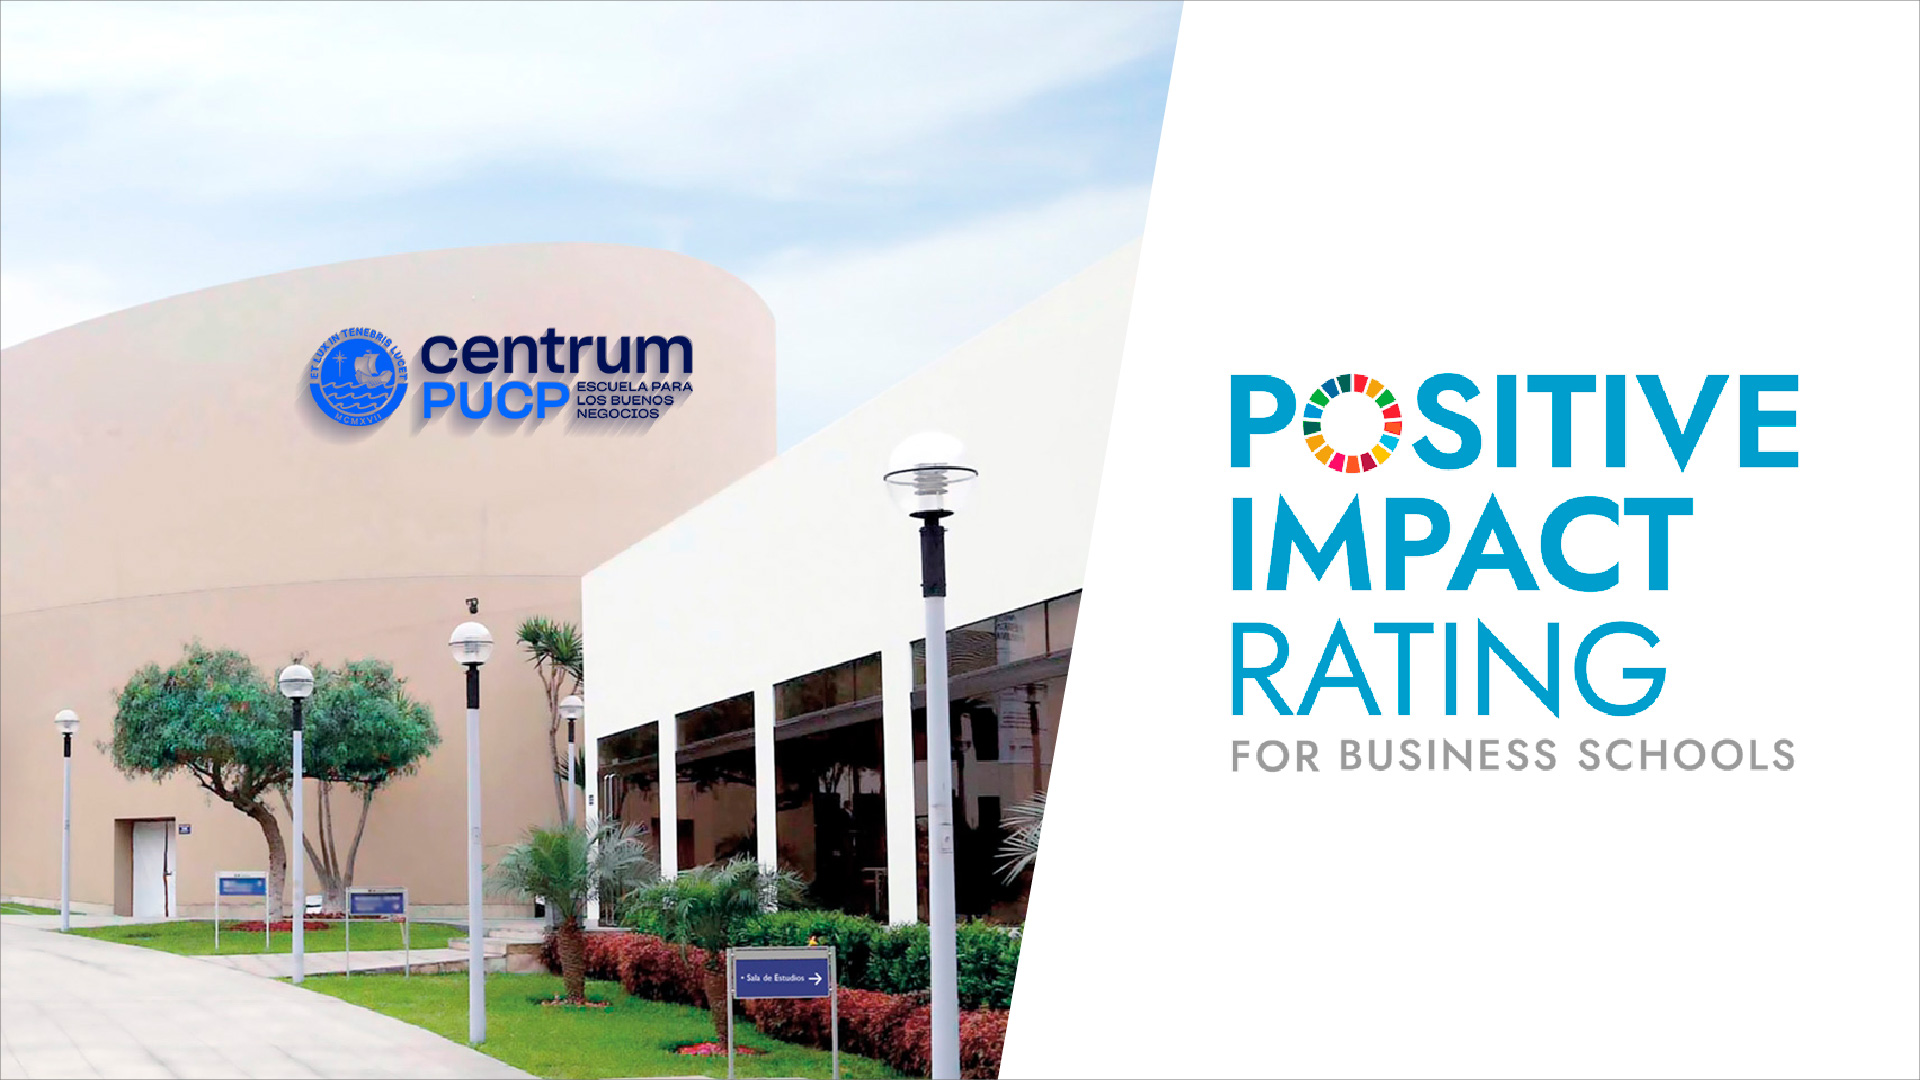 Fotocomposición: A la izquierda la fachada de centrum, a la derecha, el logo "positive impact rating"